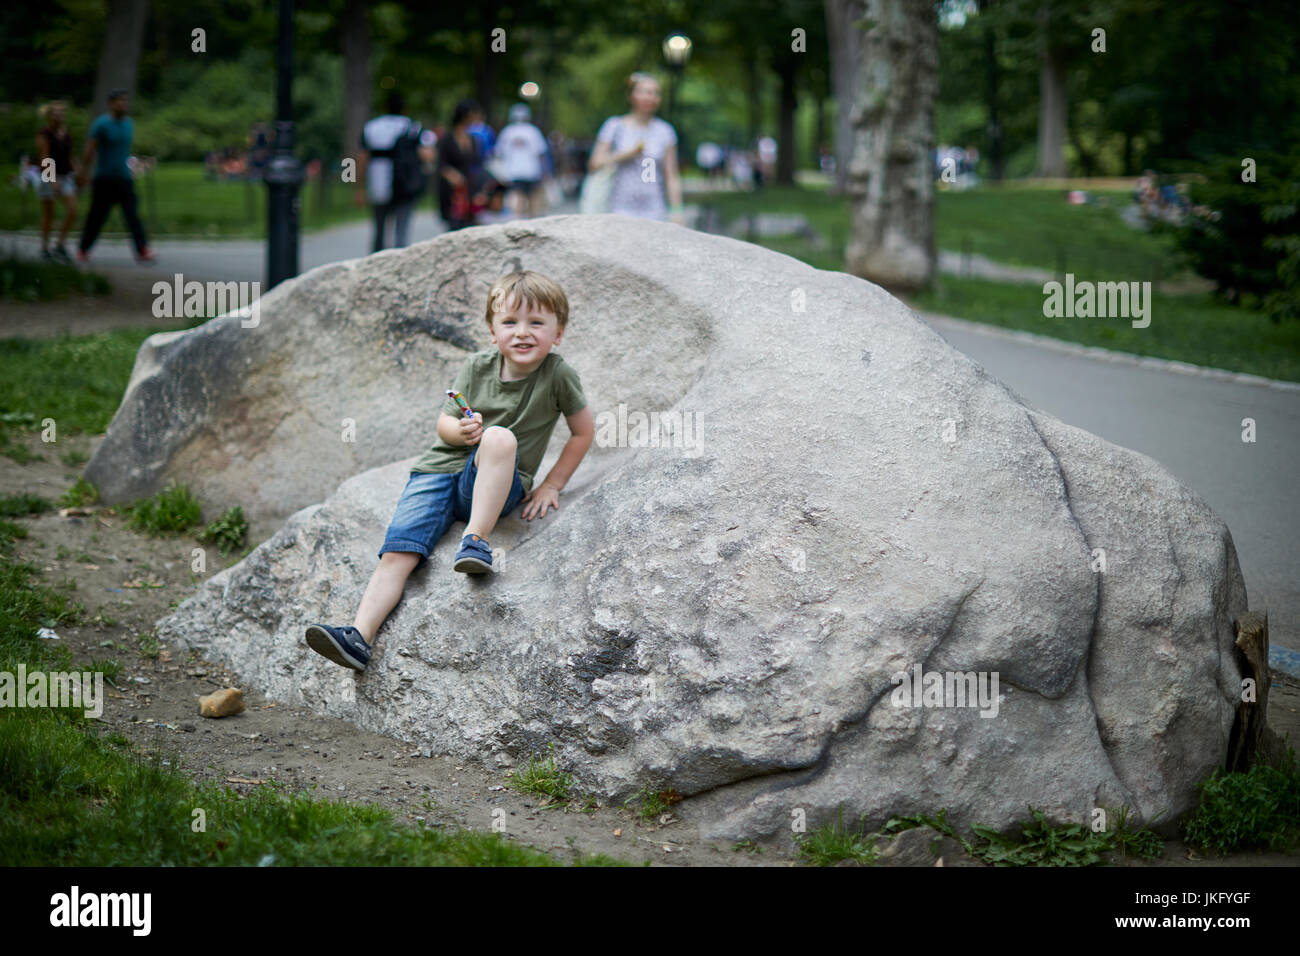 La ville de New York, Manhattan, États-Unis, William Waugh reposant sur des roches dans Central Park Banque D'Images